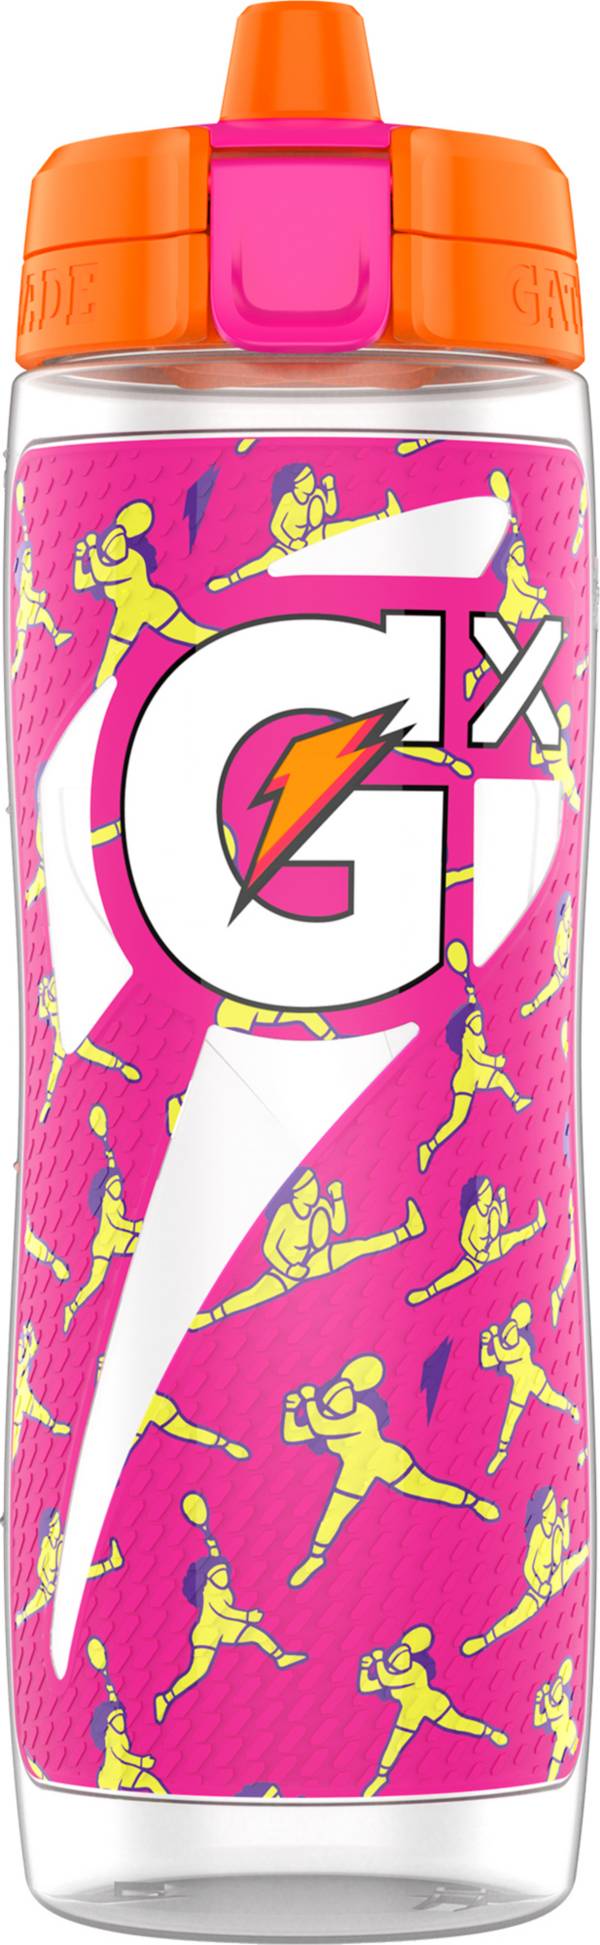 Gatorade GX Squeeze Bottle Pink 30 Ounce